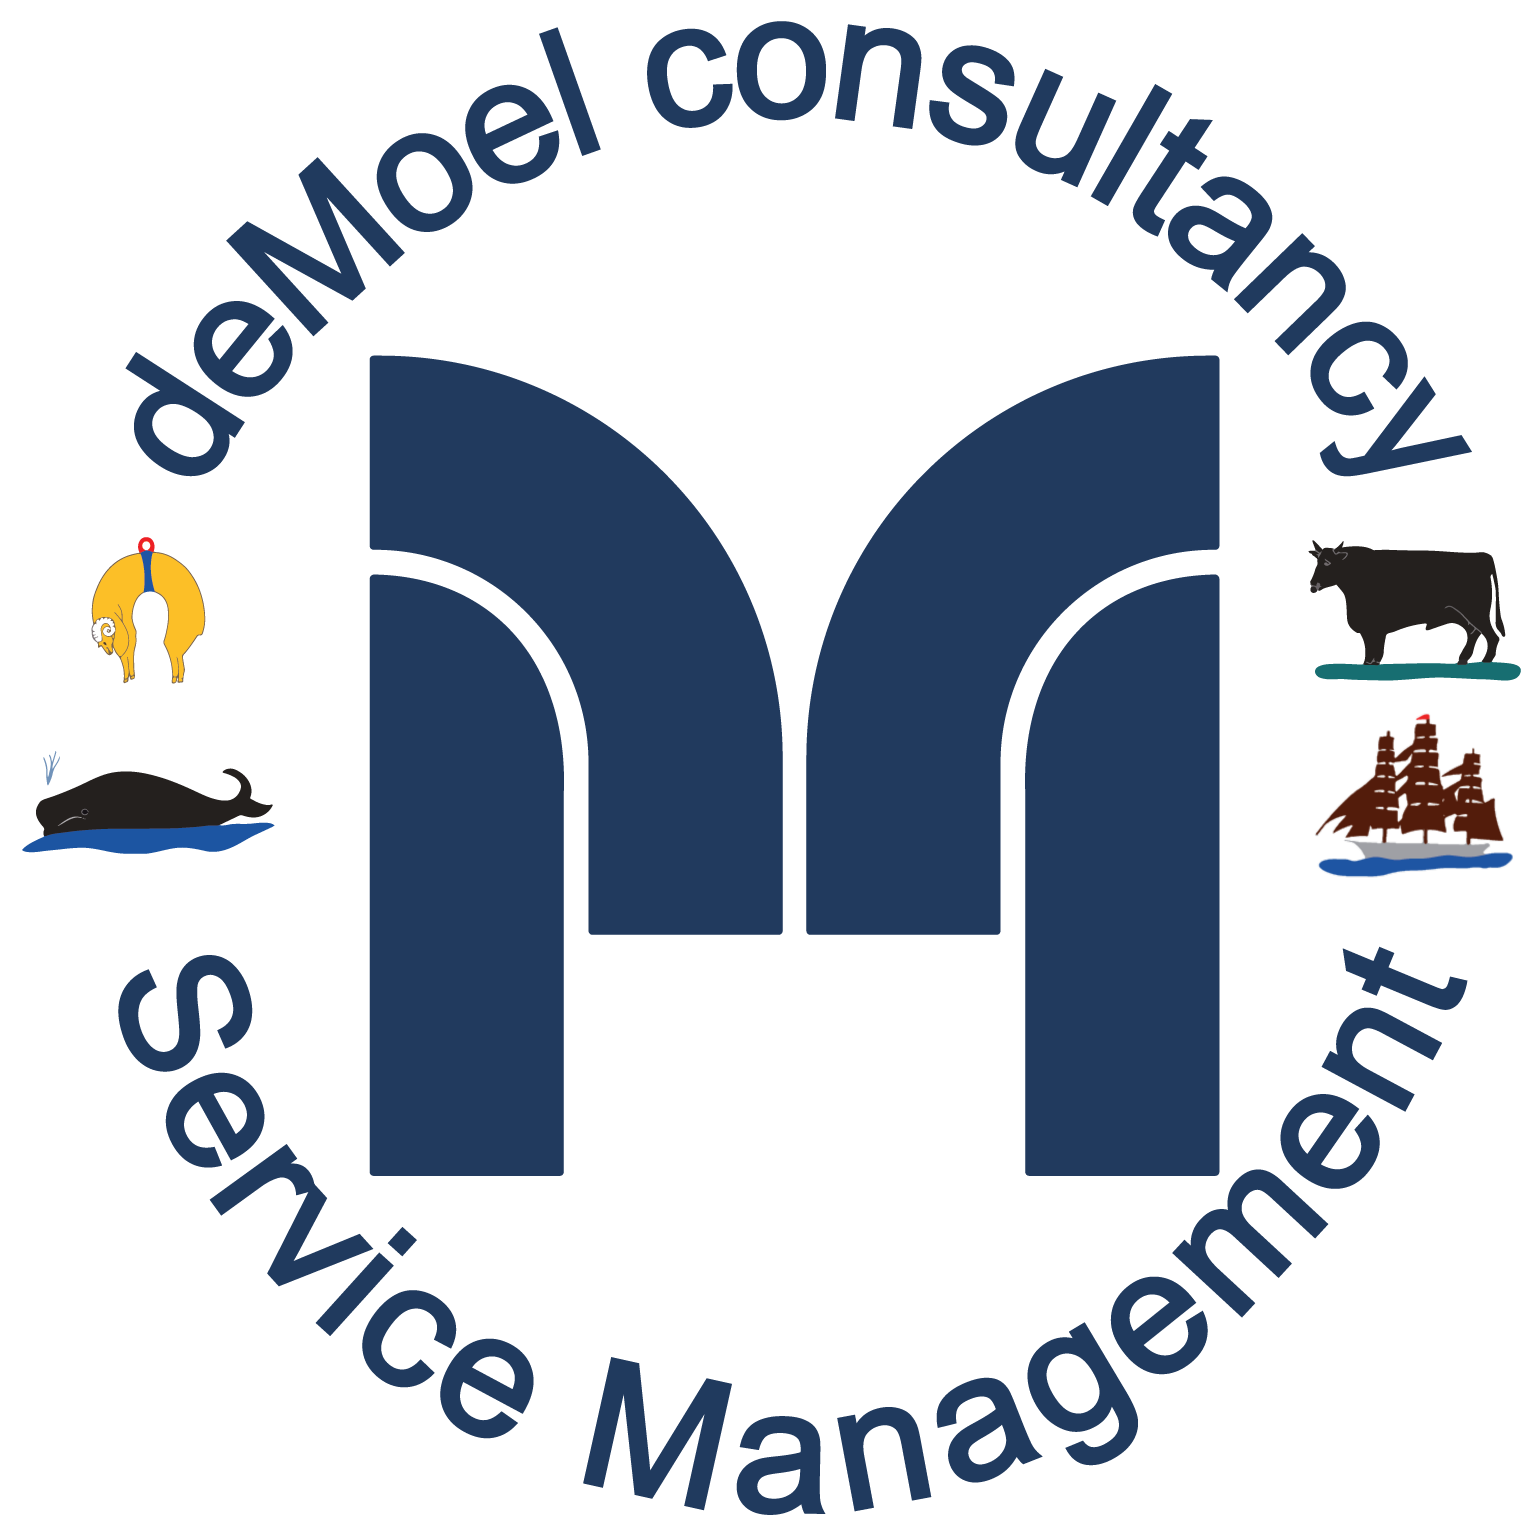 deMoel consultancy